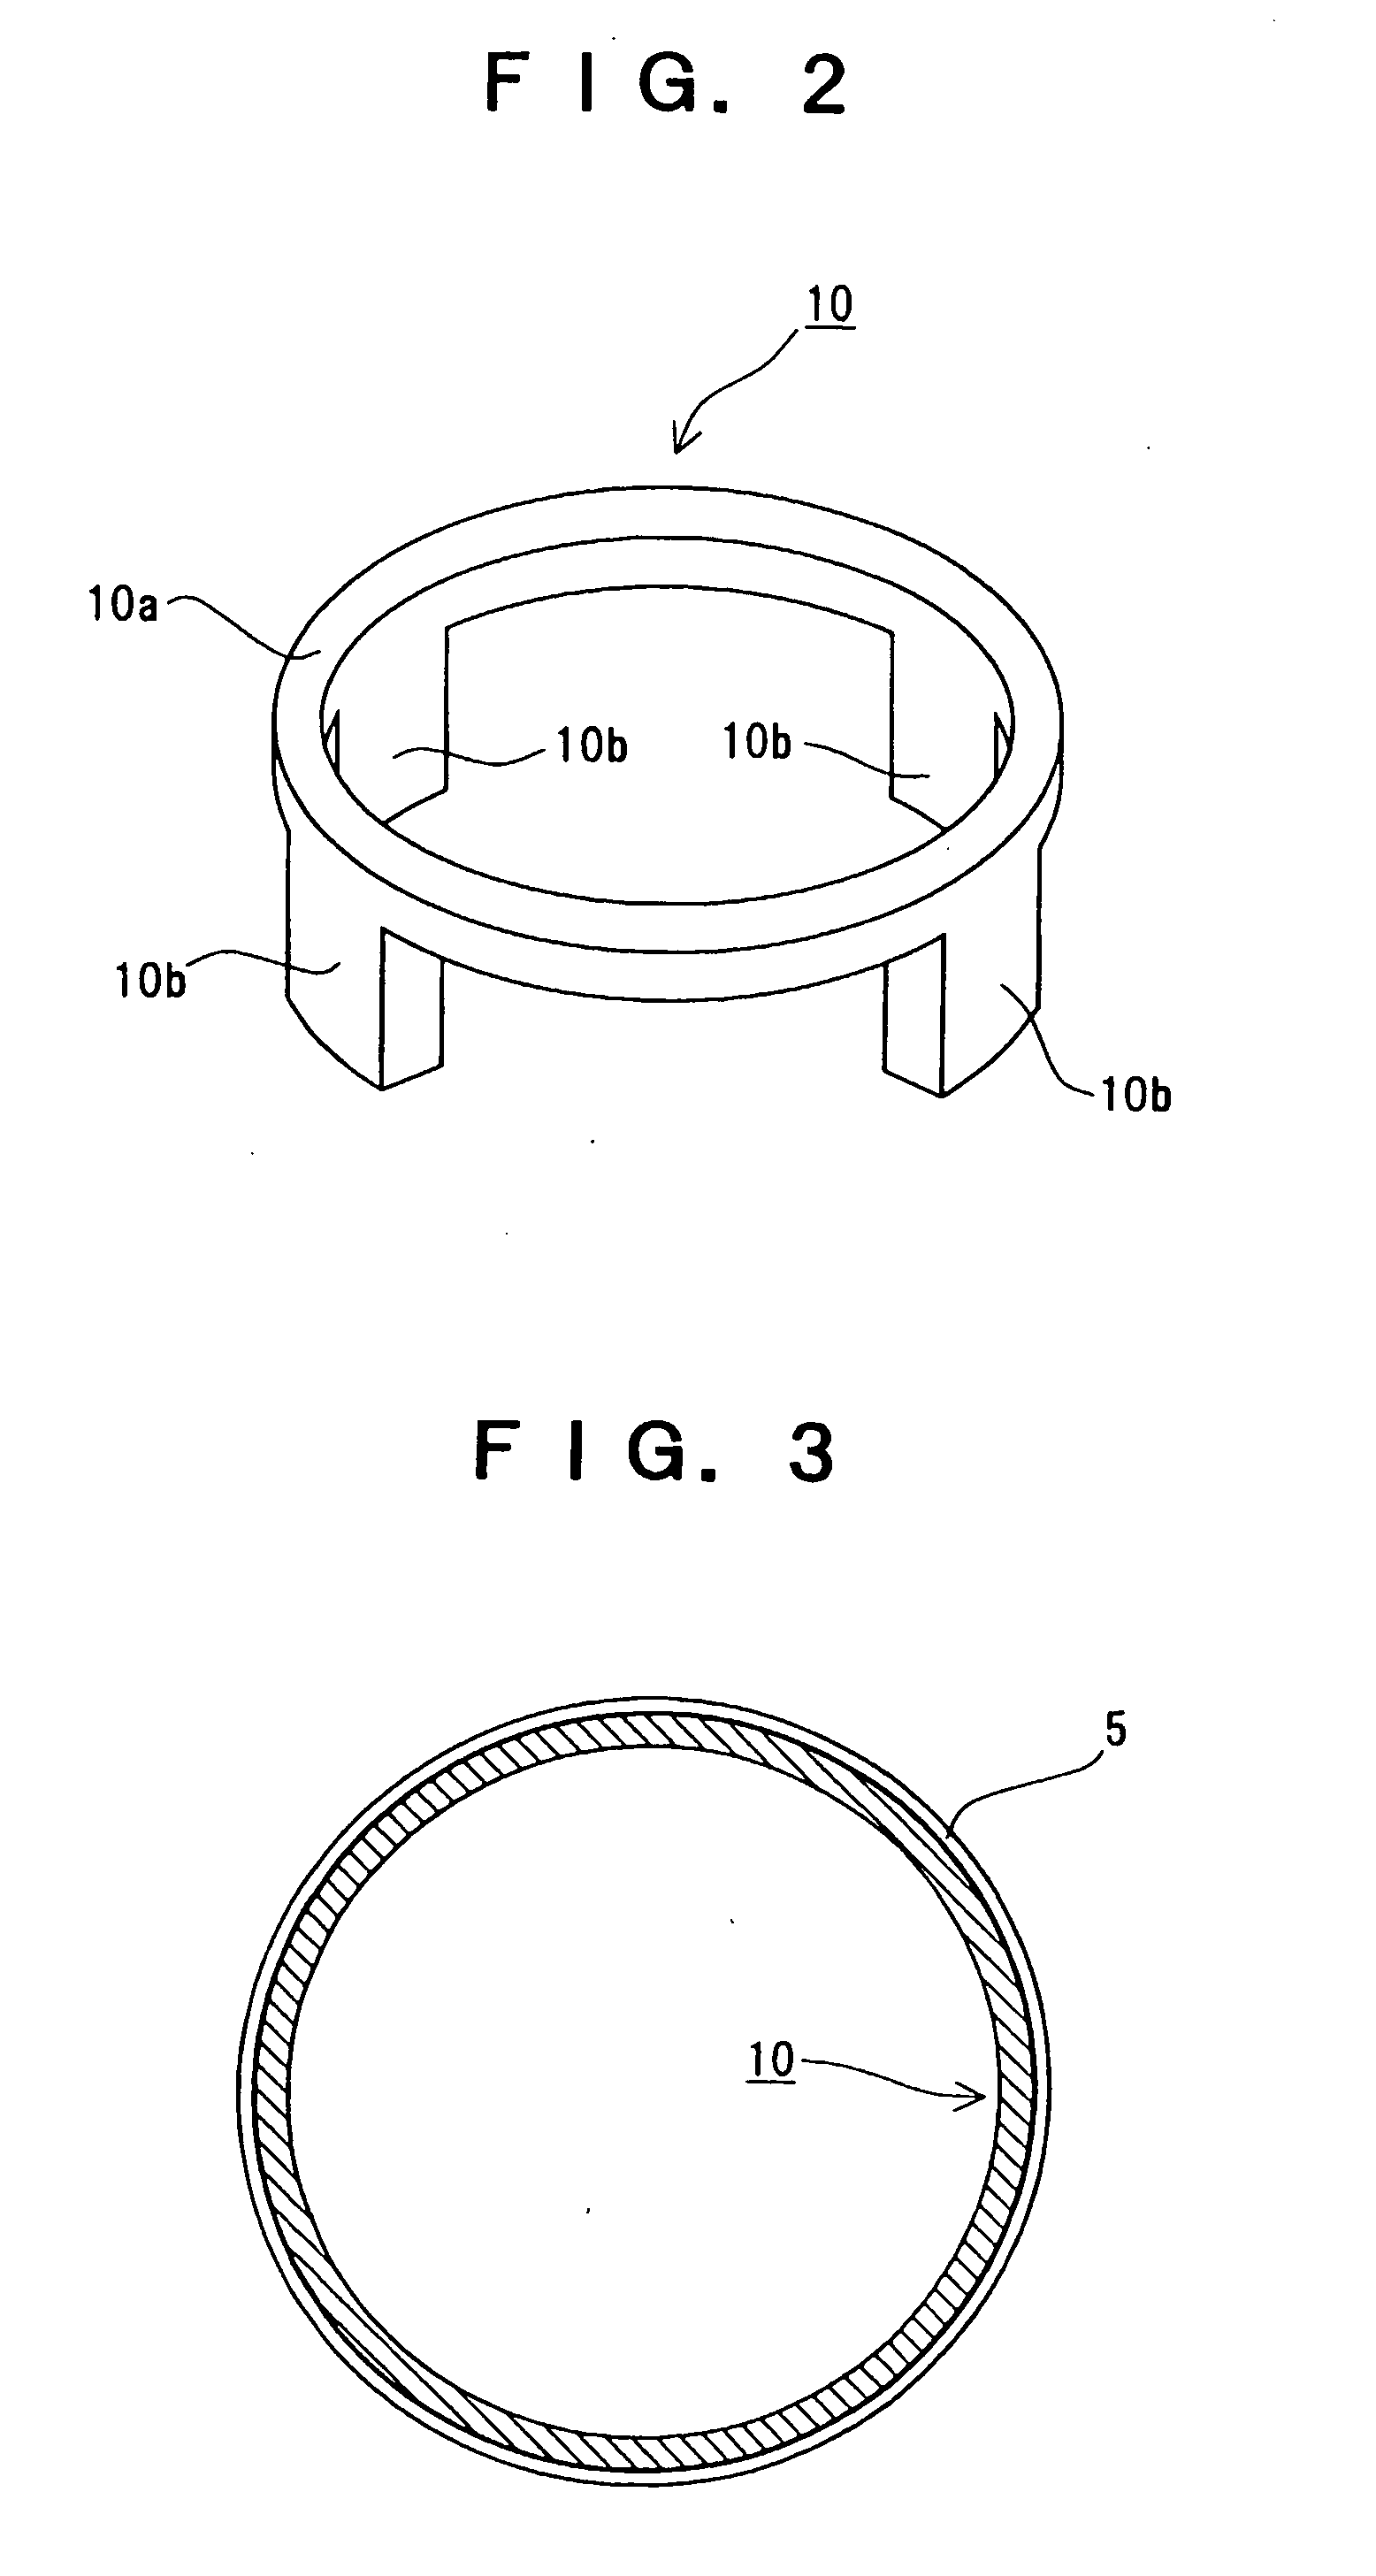 Speaker having spacer ring inside frame